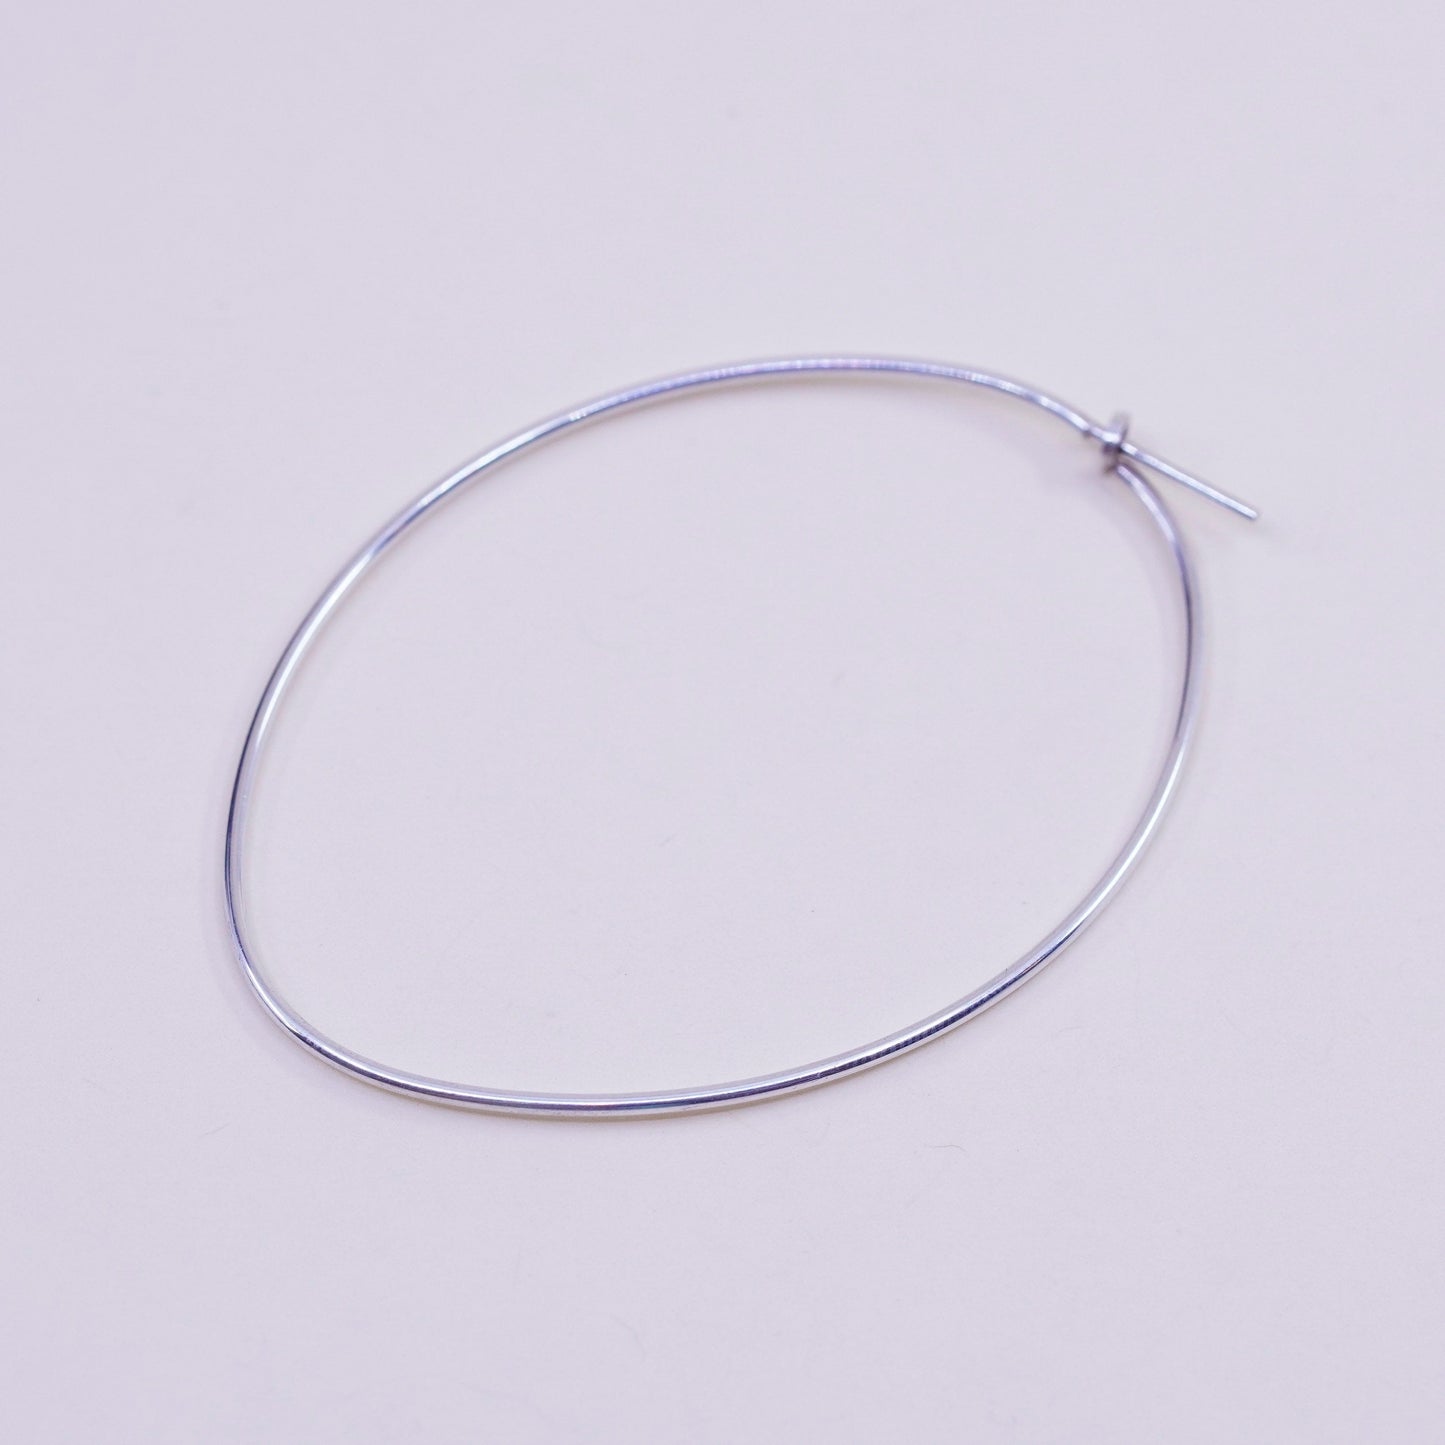 2.25”, Vintage Dyadema sterling silver oval loop earrings, primitive hoops